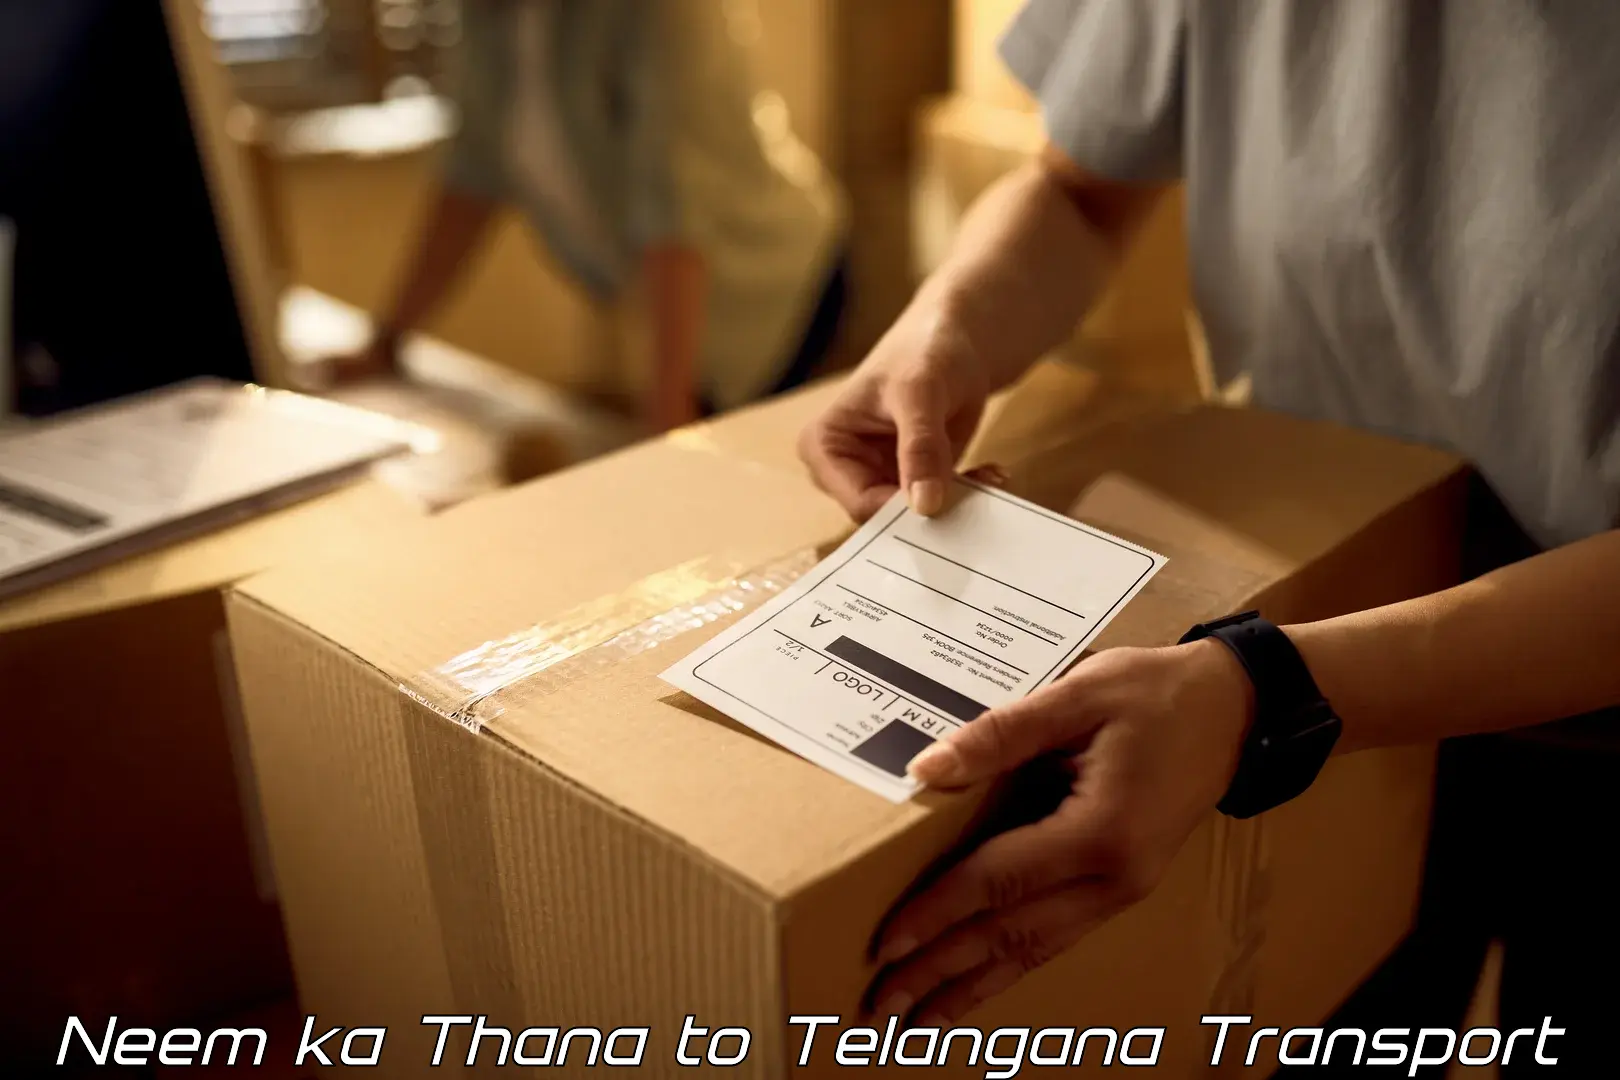 Container transport service Neem ka Thana to Wanaparthy